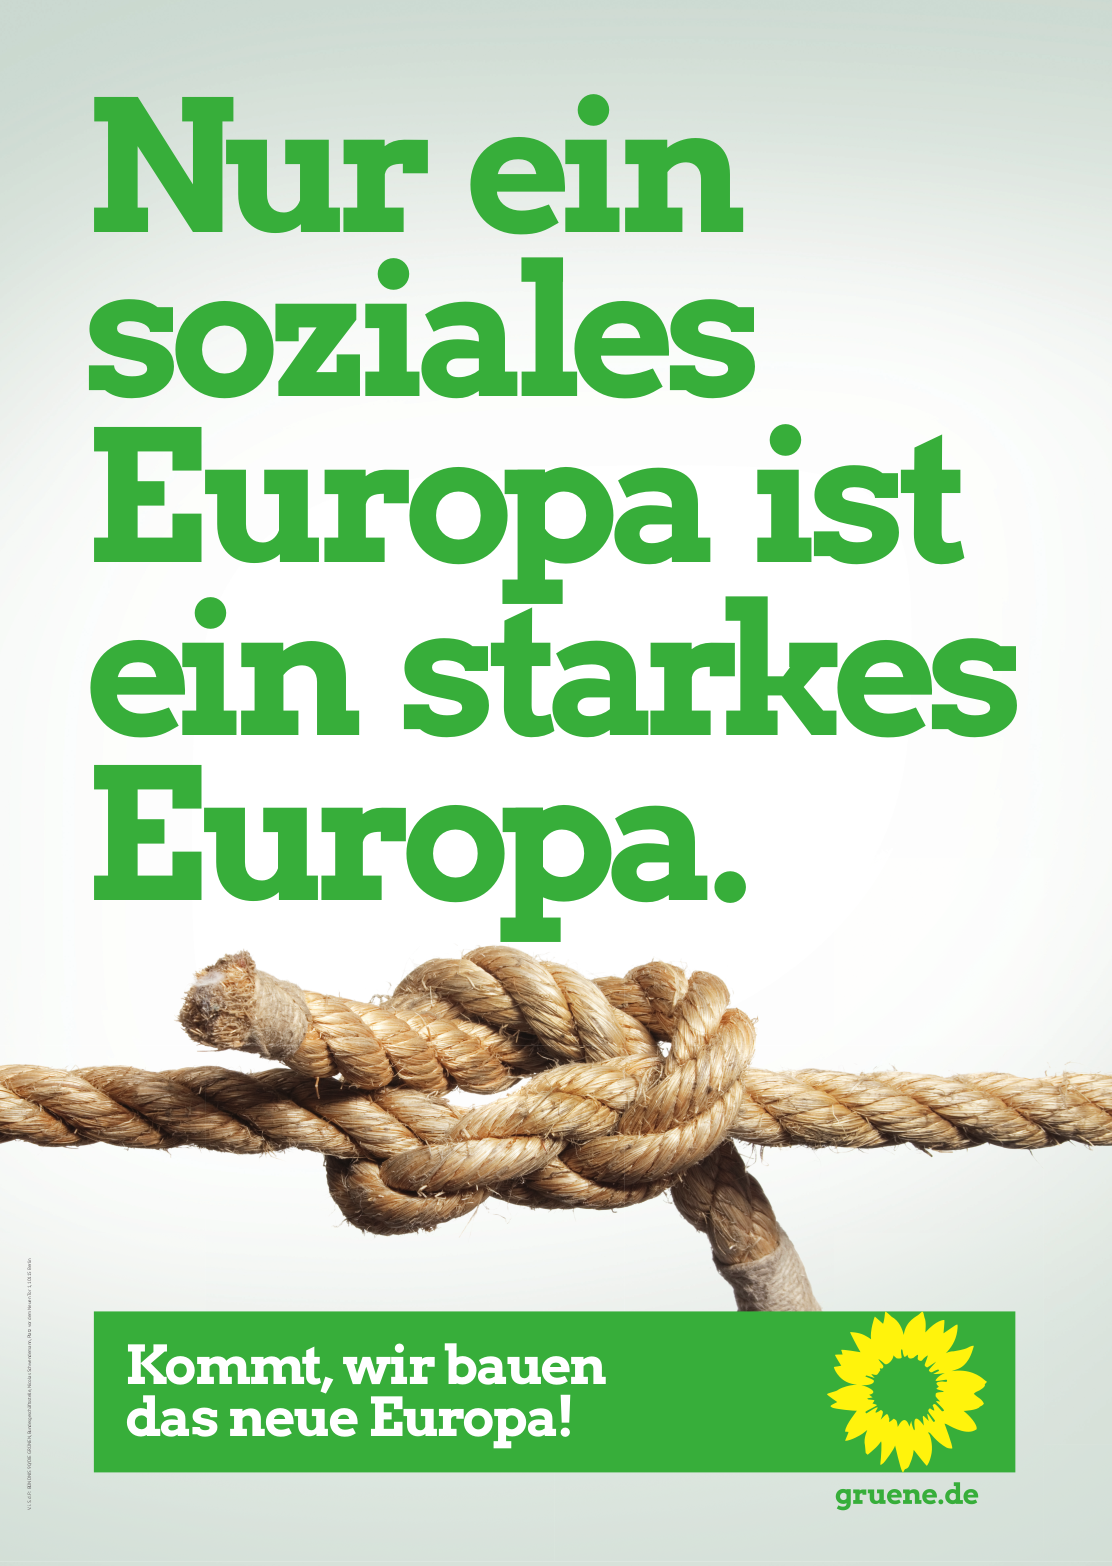 Europawahlplakat 2019, Thema: Soziales. Text: "Nur ein soziales Europa ist ein starkes Europa.", Slogan: "Kommt, wir bauen das neue Europa!"